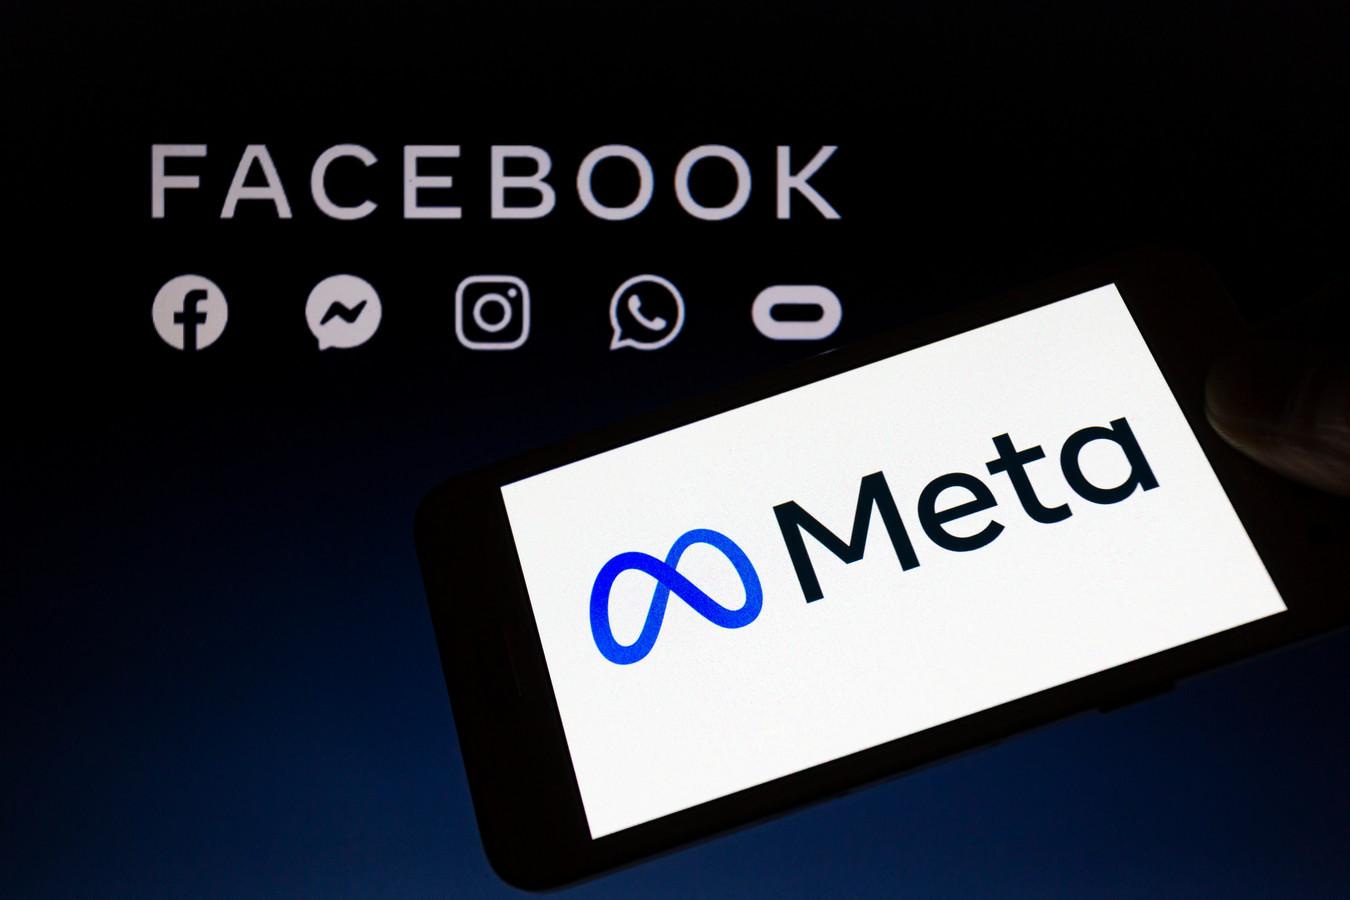 Facebook a changé le nom de sa maison mère en Meta dans le cadre d'un important changement de marque. L'entreprise a déclaré que cela permettrait de mieux "englober" ce qu'elle fait, alors qu'elle élargit sa portée au-delà des médias sociaux dans des domaines tels que la réalité virtuelle (VR).